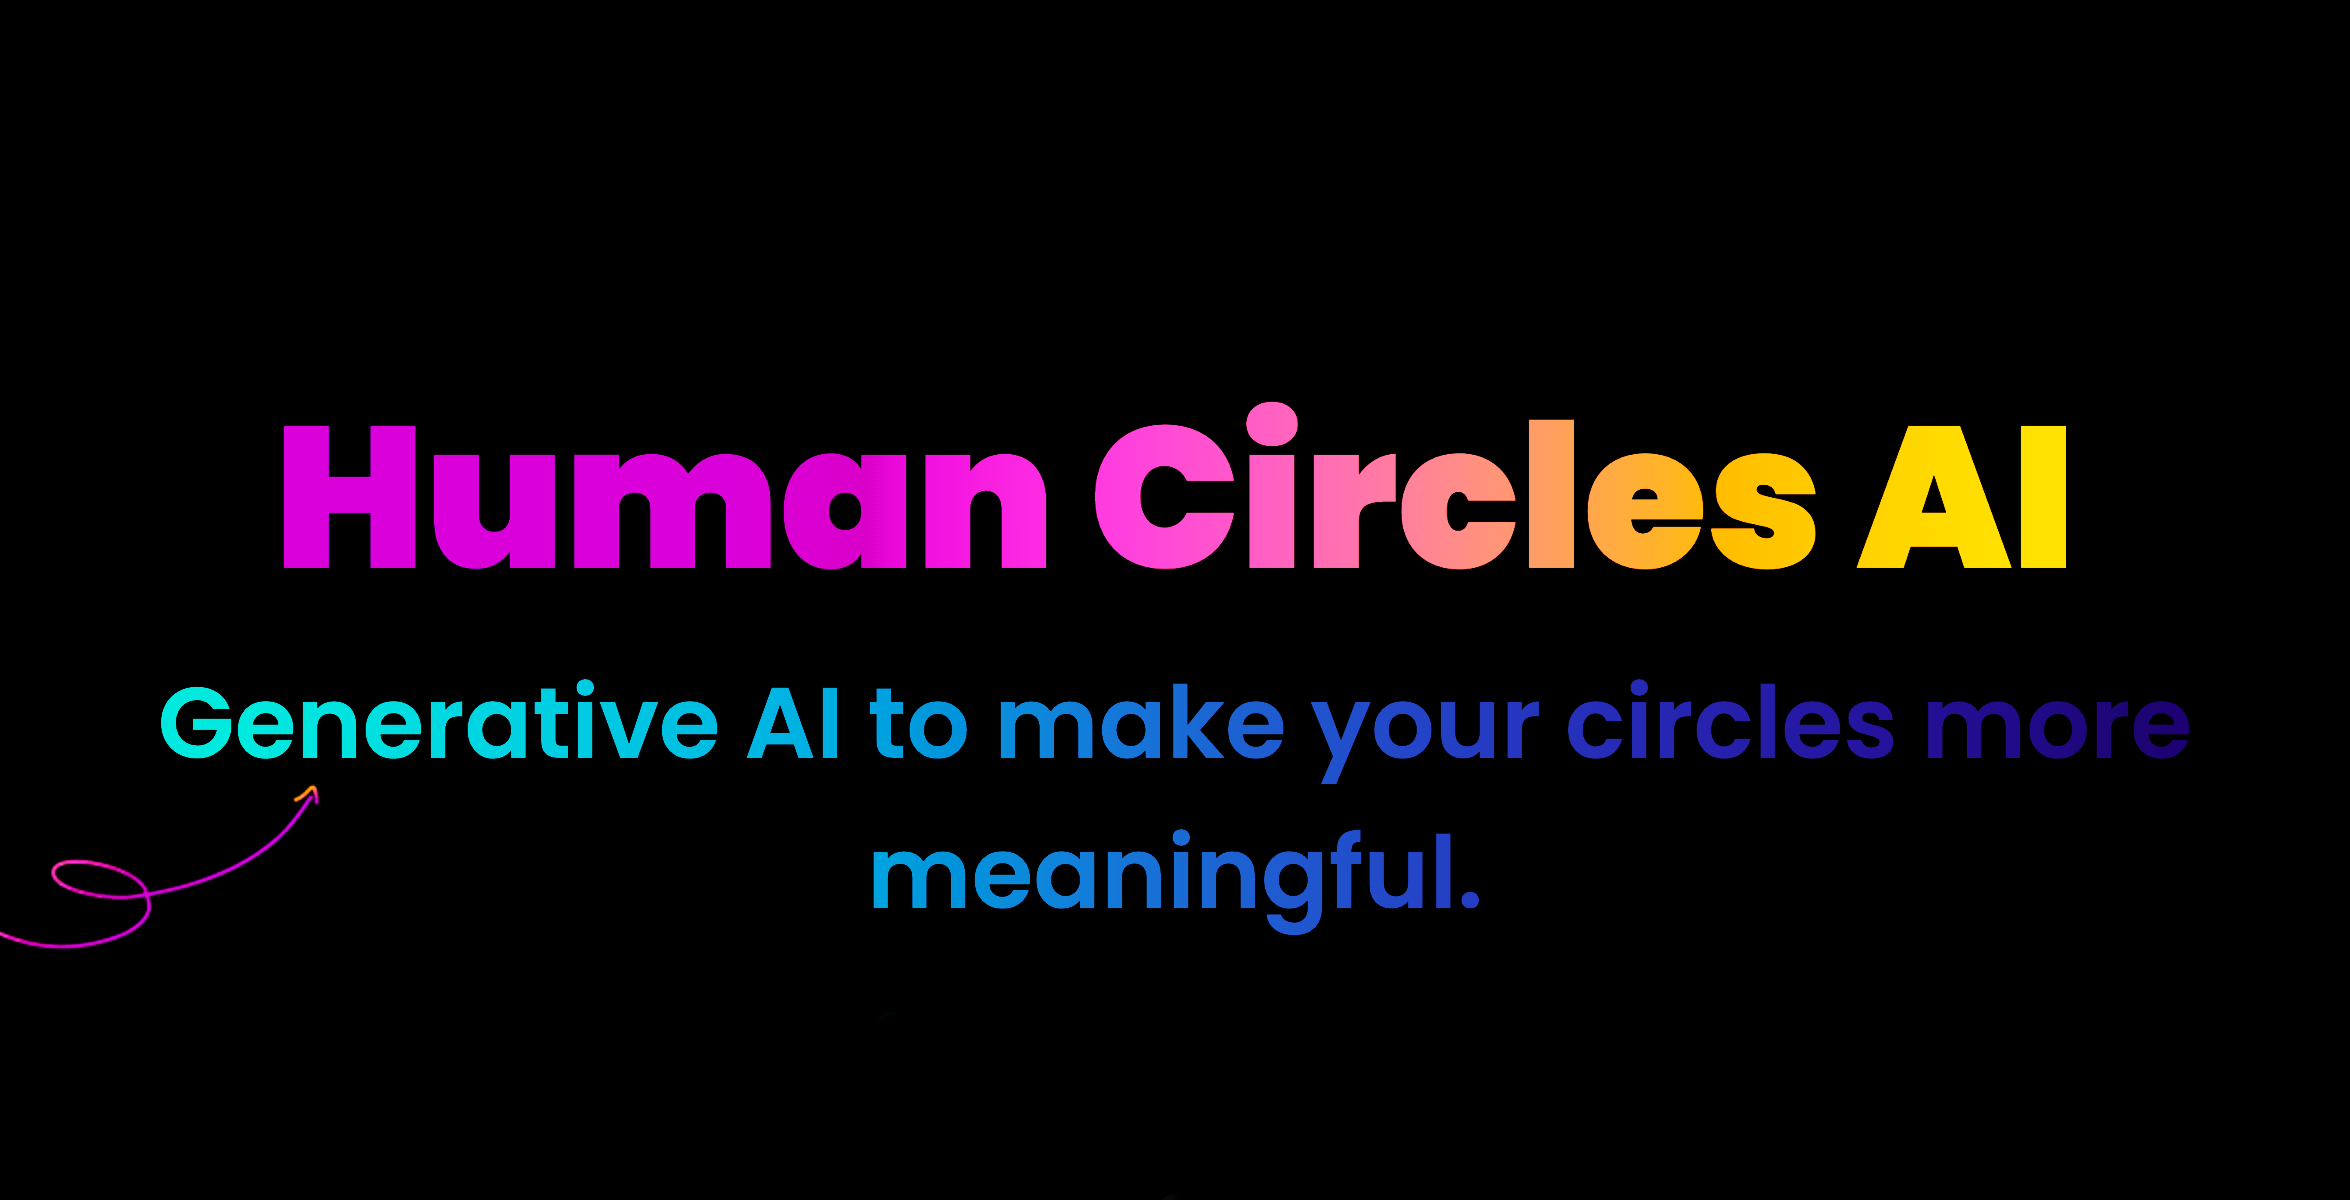 Human Circles AI post image